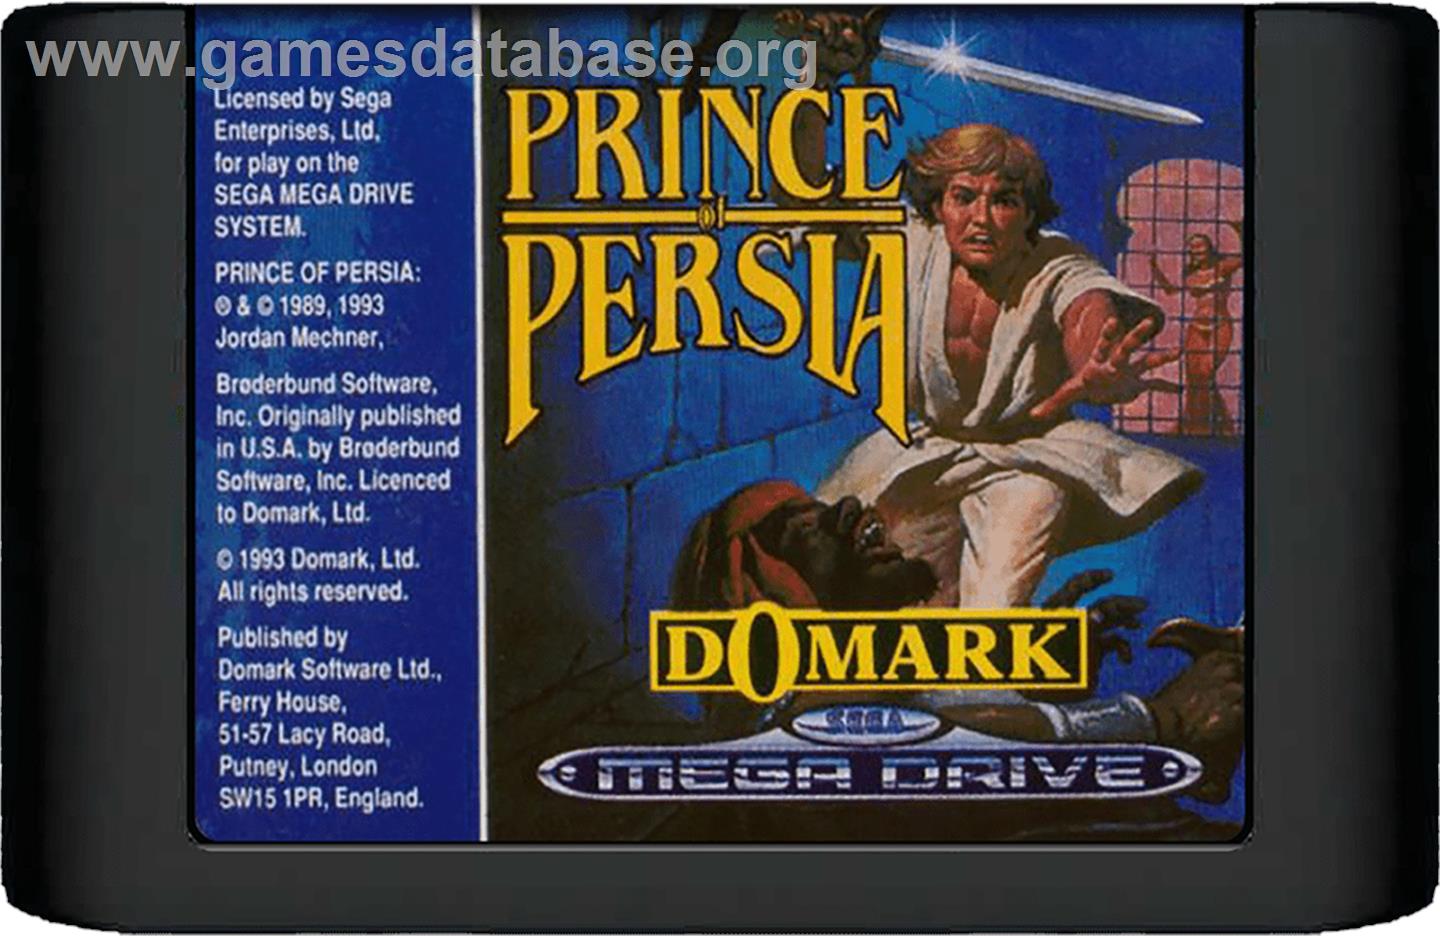 Prince of Persia - Sega Genesis - Artwork - Cartridge